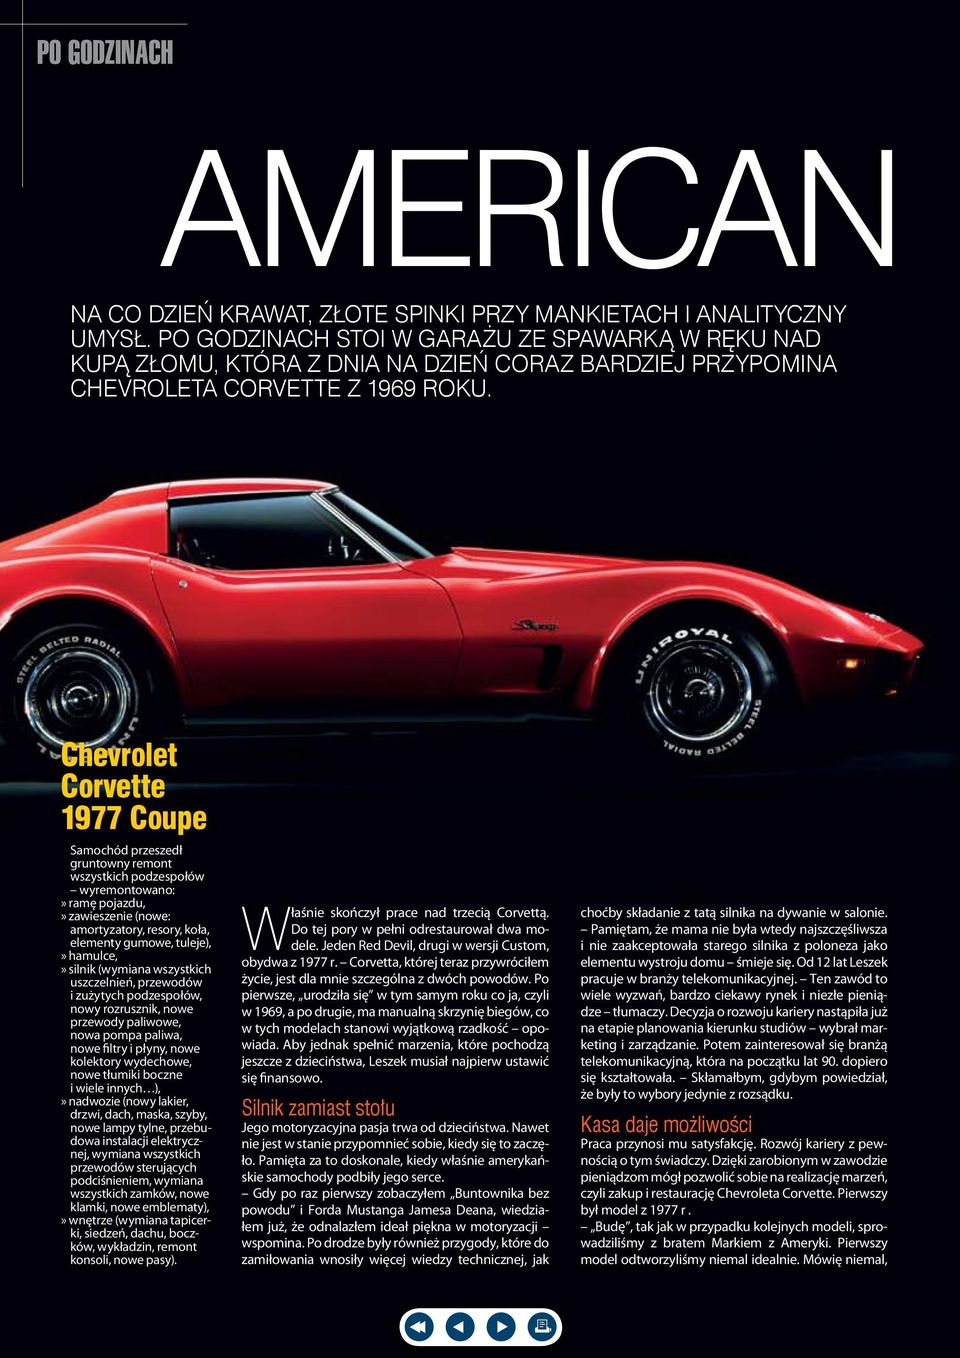 Chevrolet Corvette 1977 Coupe Samochód przeszedł gruntowny remont wszystkich podzespołów wyremontowano:» ramę pojazdu,» zawieszenie (nowe: amortyzatory, resory, koła, elementy gumowe, tuleje),»